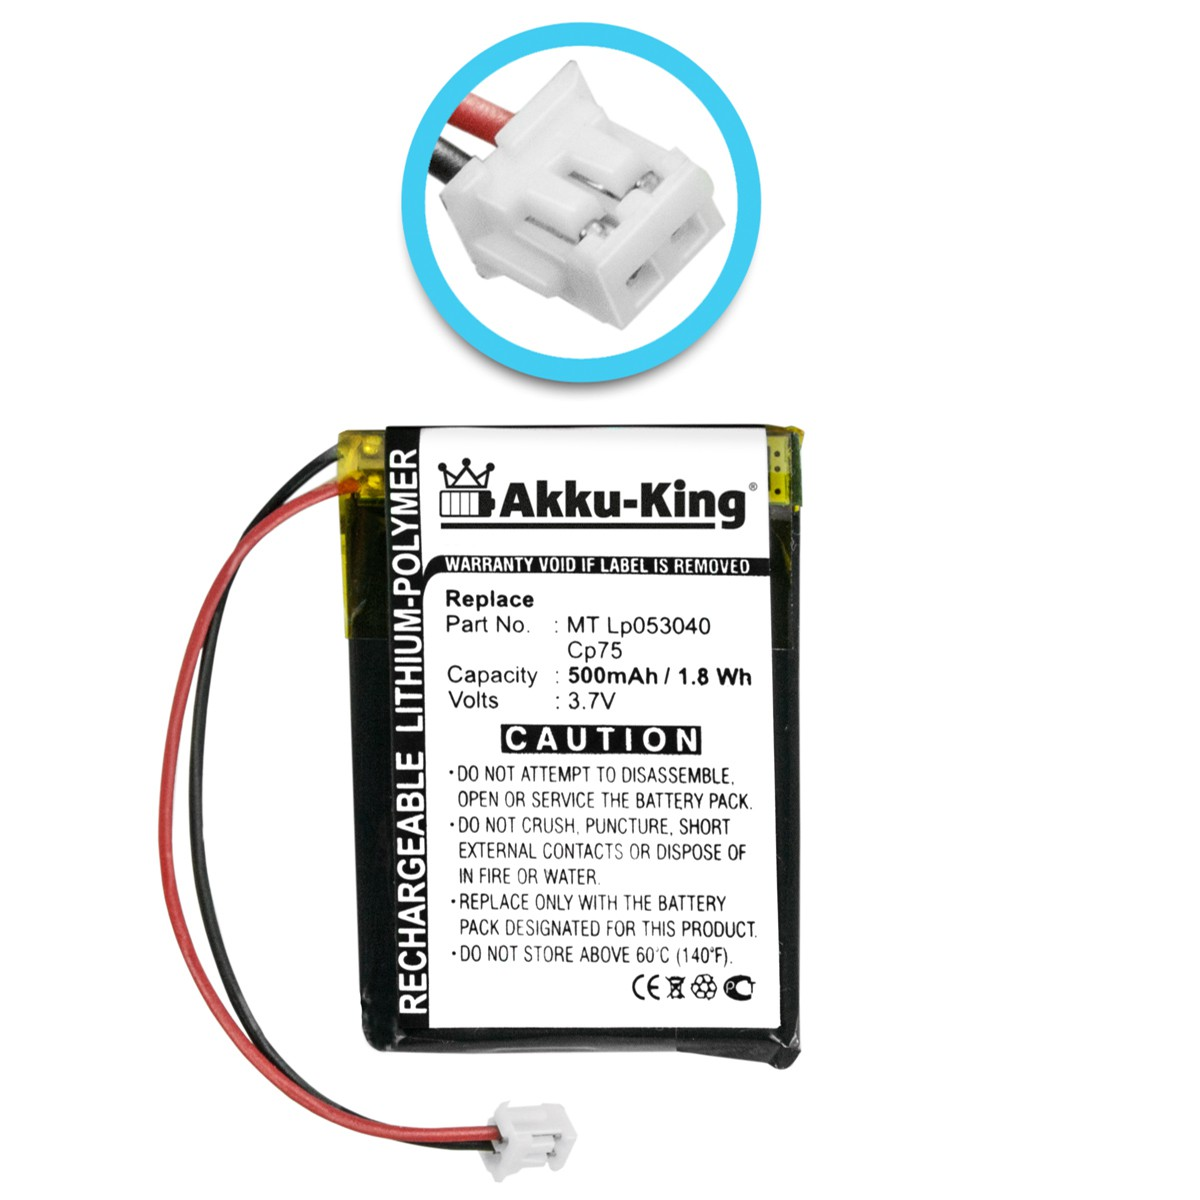 AKKU-KING Akku iDect Volt, mit LP053040 MT Geräte-Akku, 500mAh 3.7 kompatibel Li-Polymer